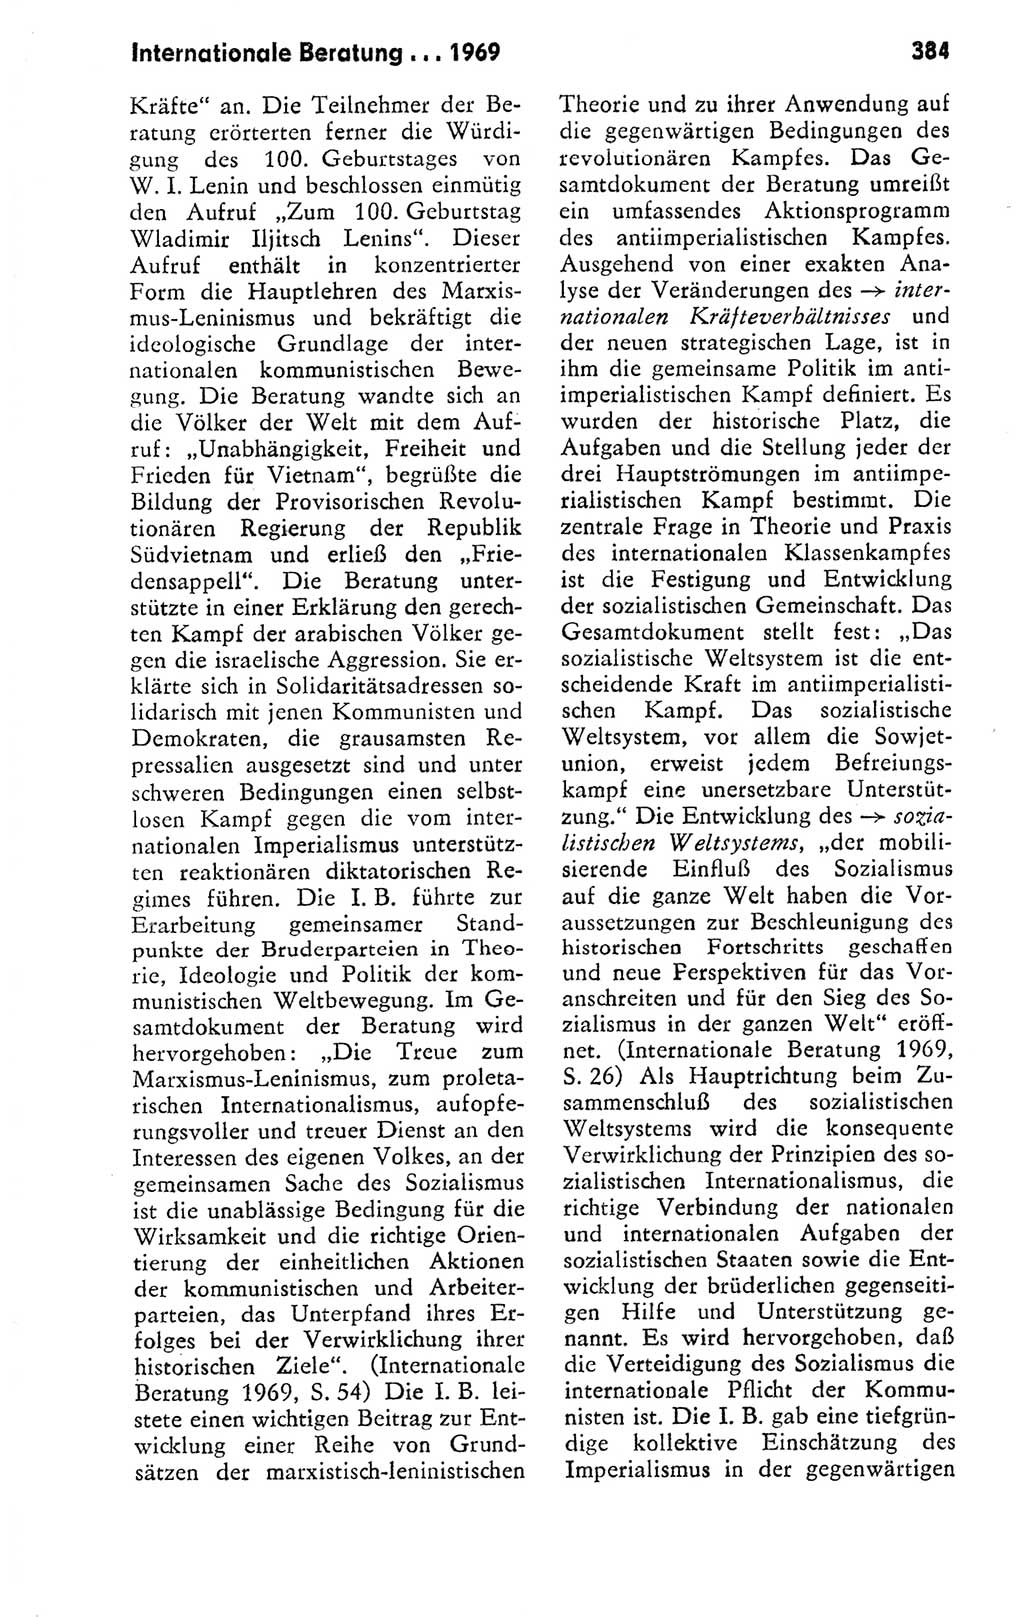 Kleines politisches Wörterbuch [Deutsche Demokratische Republik (DDR)] 1978, Seite 384 (Kl. pol. Wb. DDR 1978, S. 384)